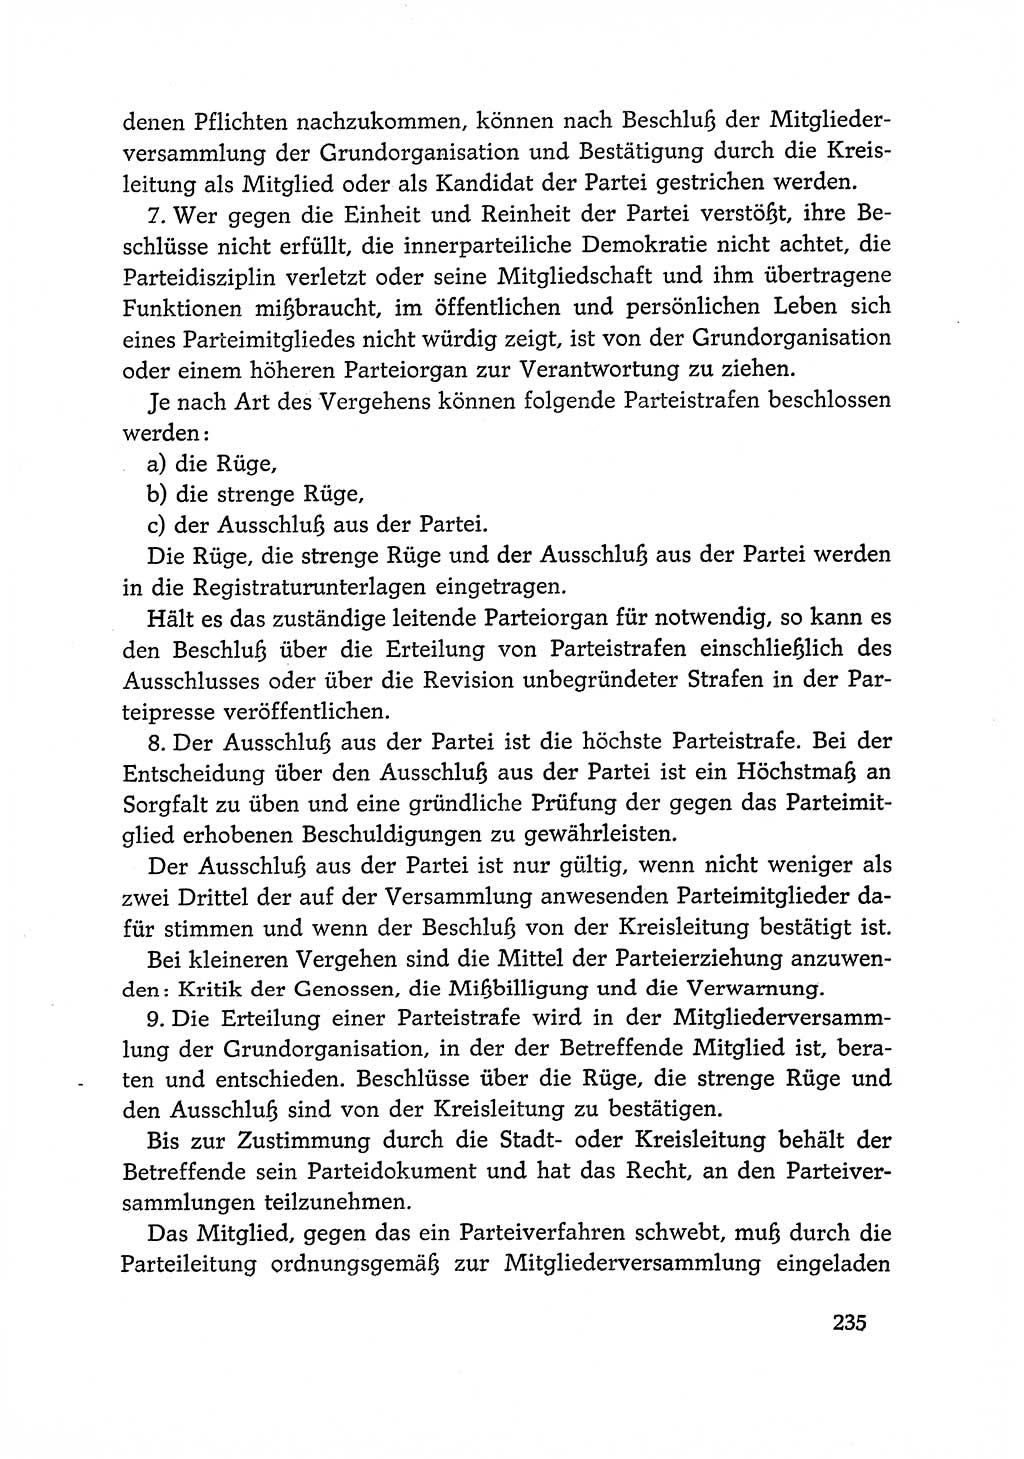 Dokumente der Sozialistischen Einheitspartei Deutschlands (SED) [Deutsche Demokratische Republik (DDR)] 1966-1967, Seite 235 (Dok. SED DDR 1966-1967, S. 235)